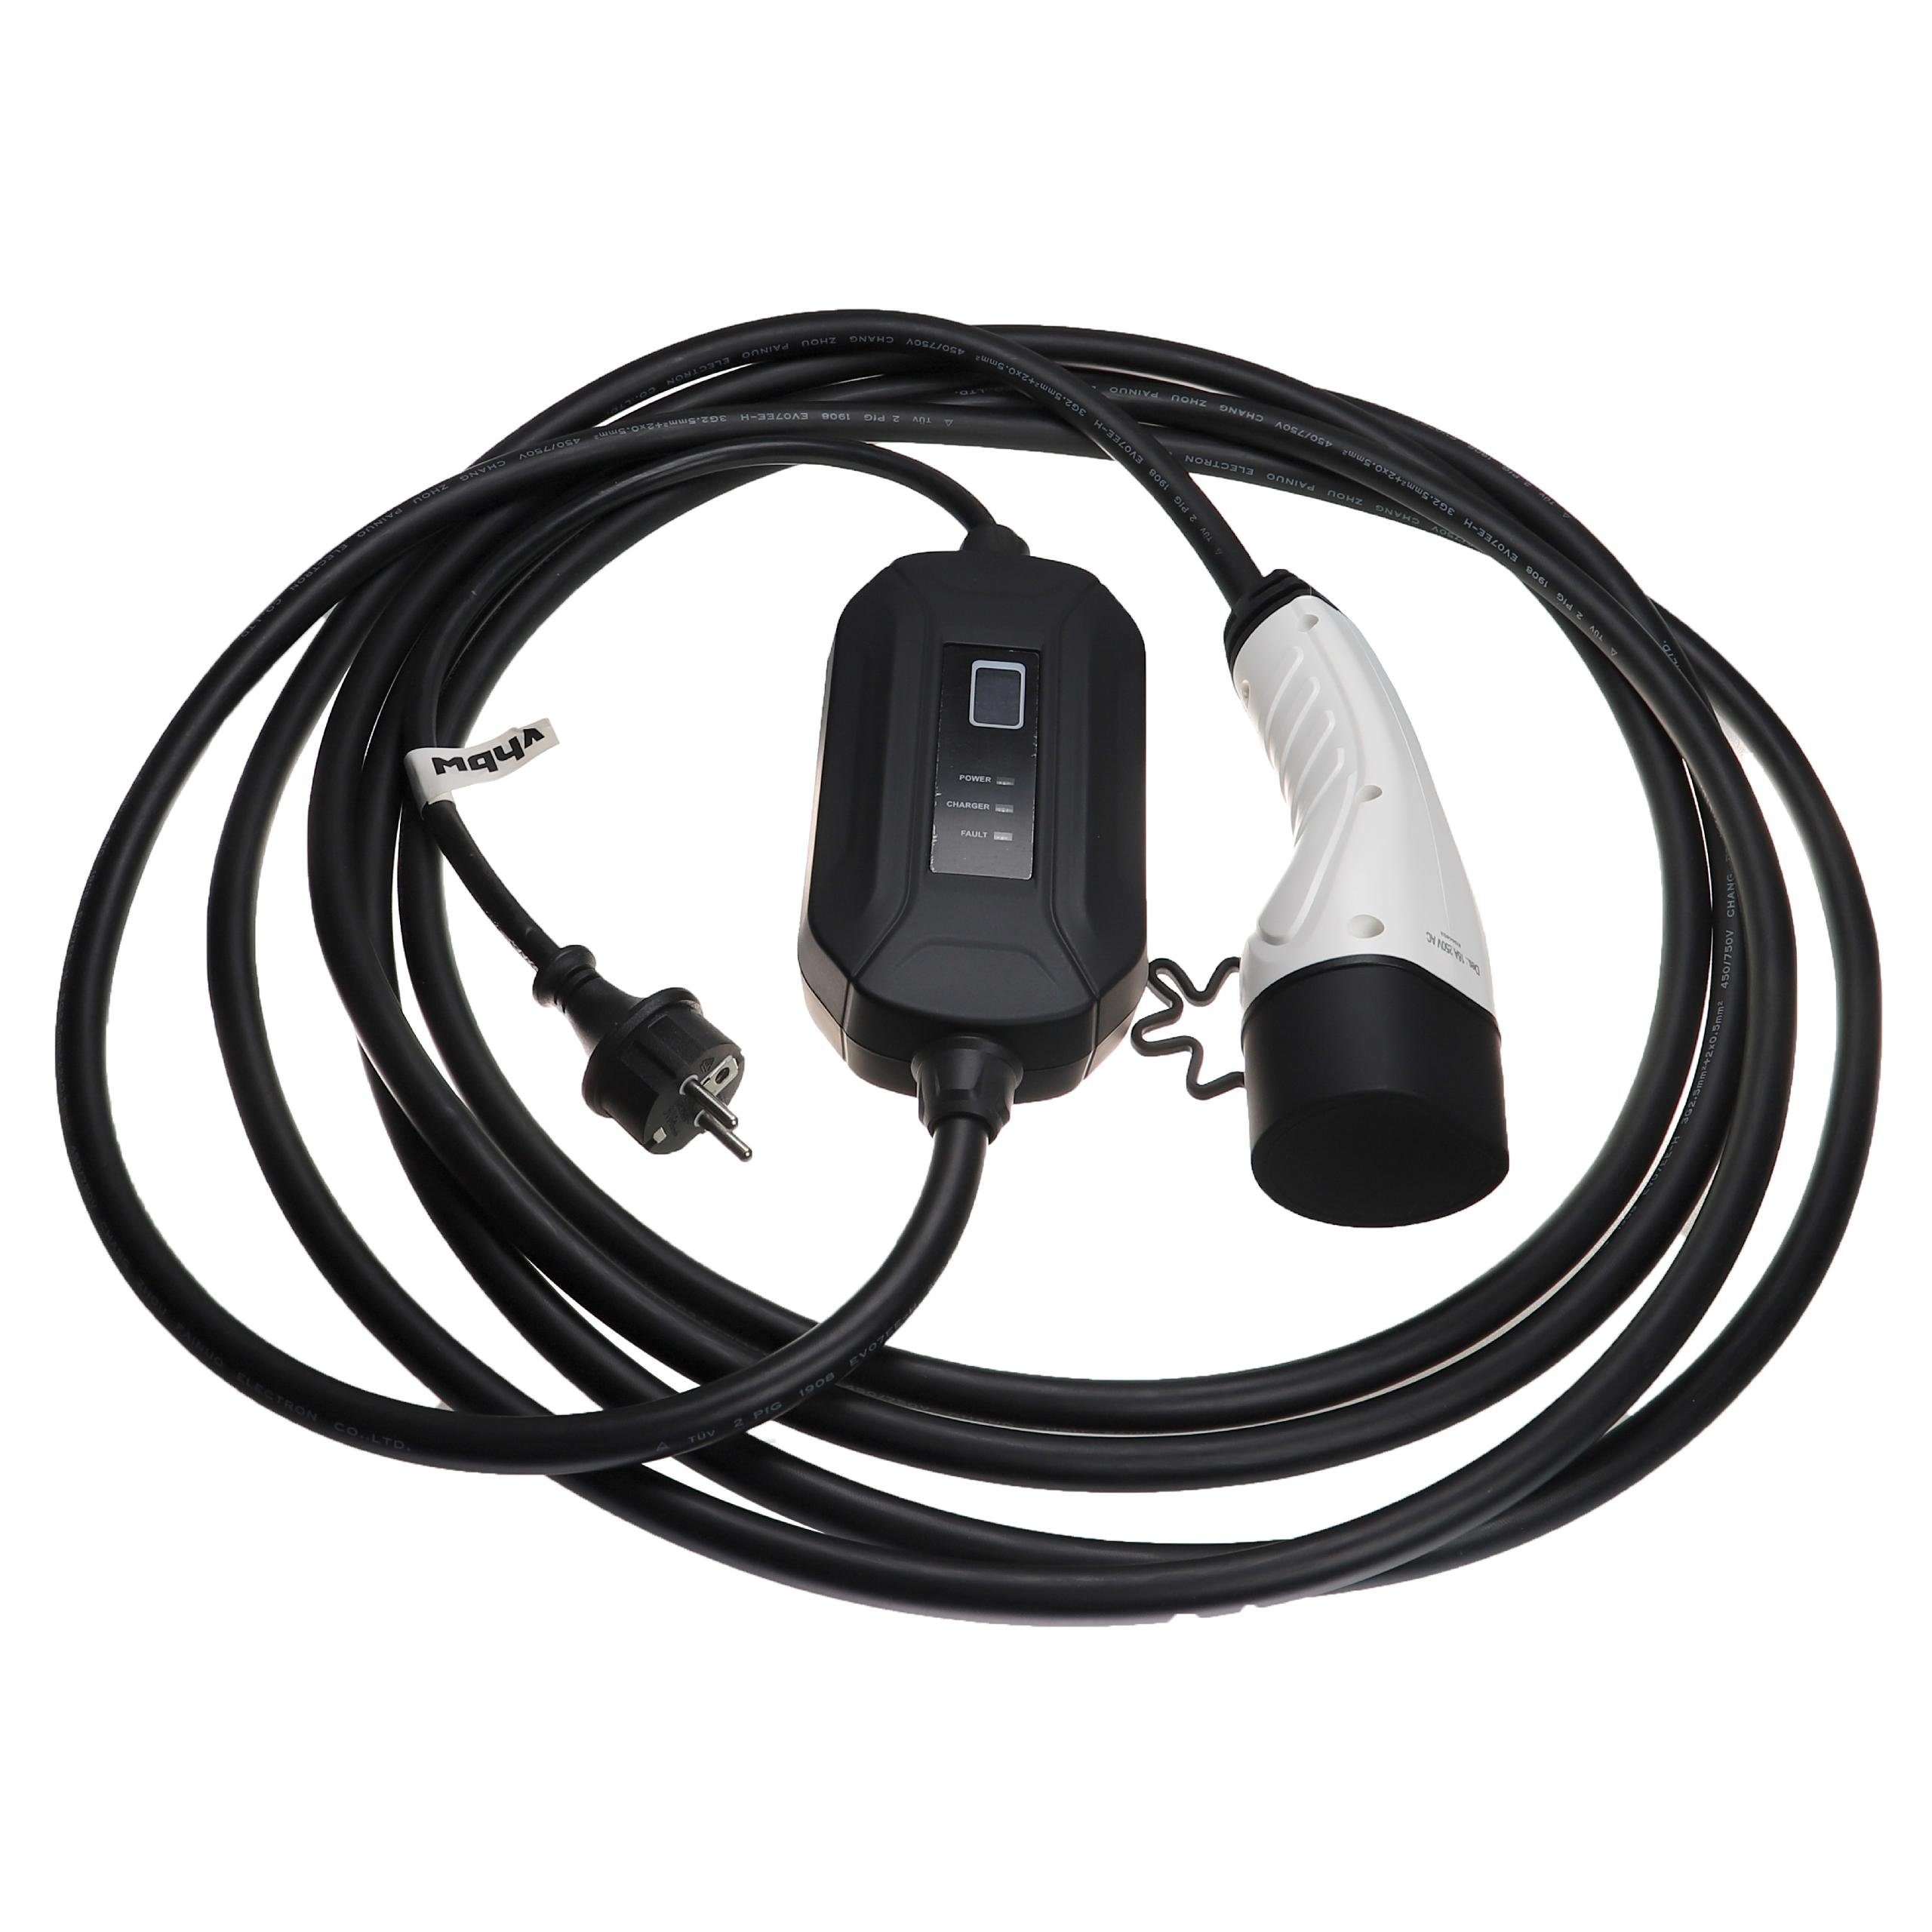 Elektro-Kabel passend Plug-in-Hybrid Nissan Elektroauto vhbw / Volkswagen für